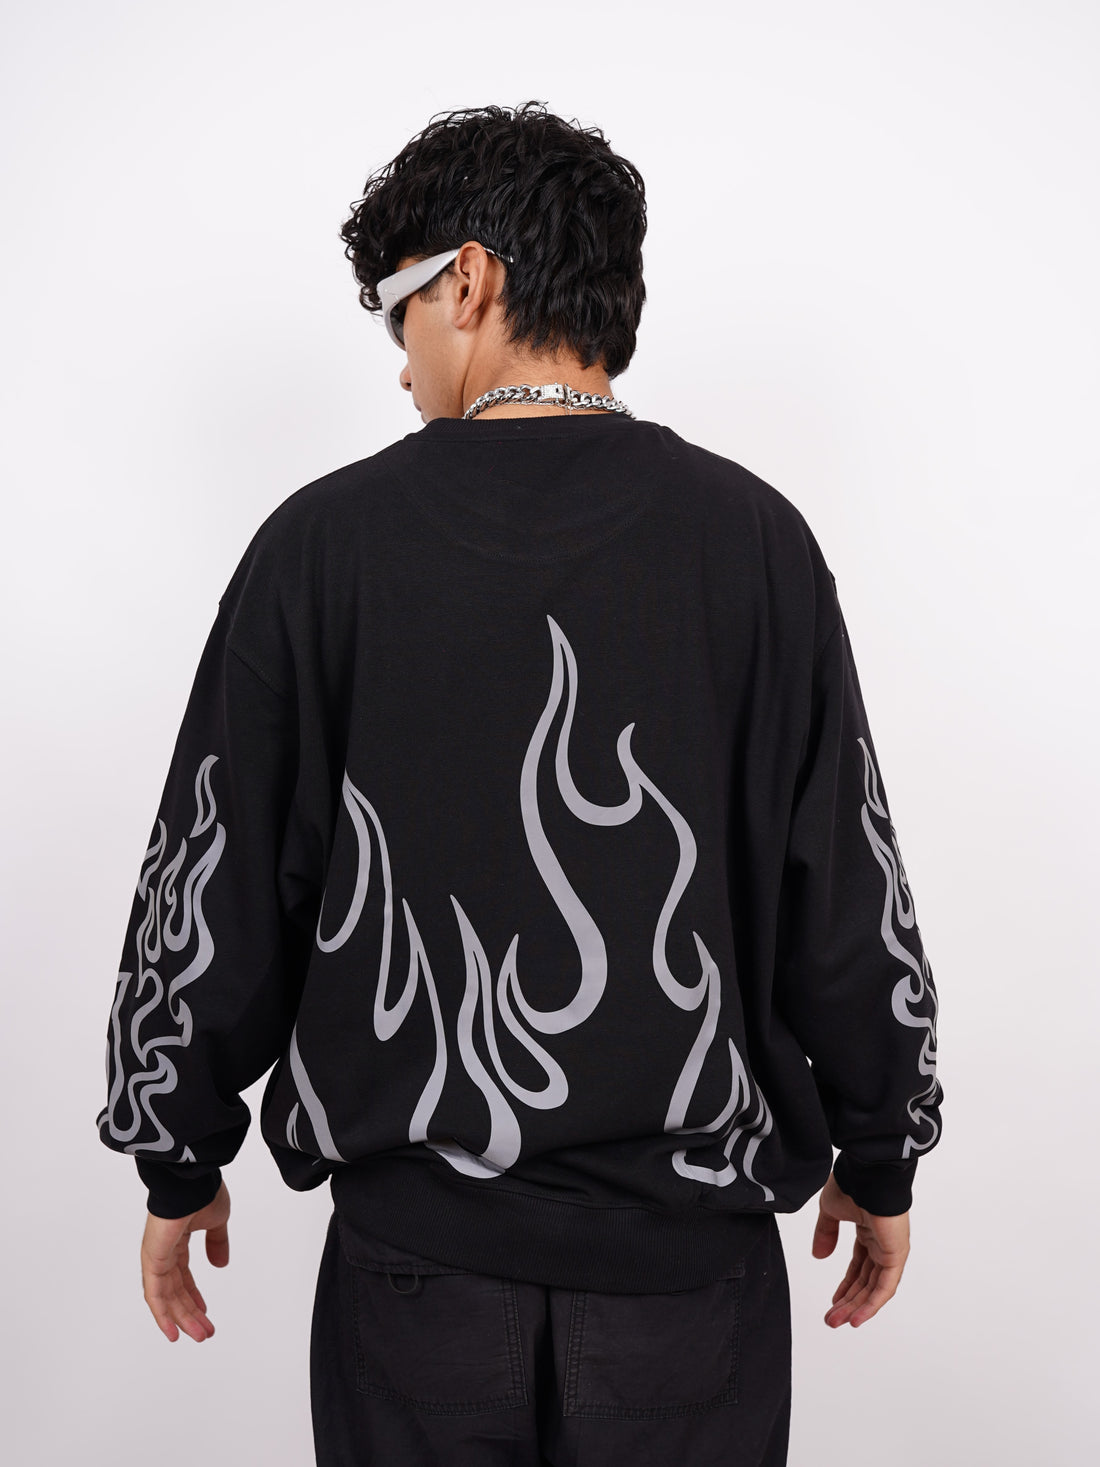 Bleach (Reflective) - Heavyweight Baggy Sweatshirt For Men And Women